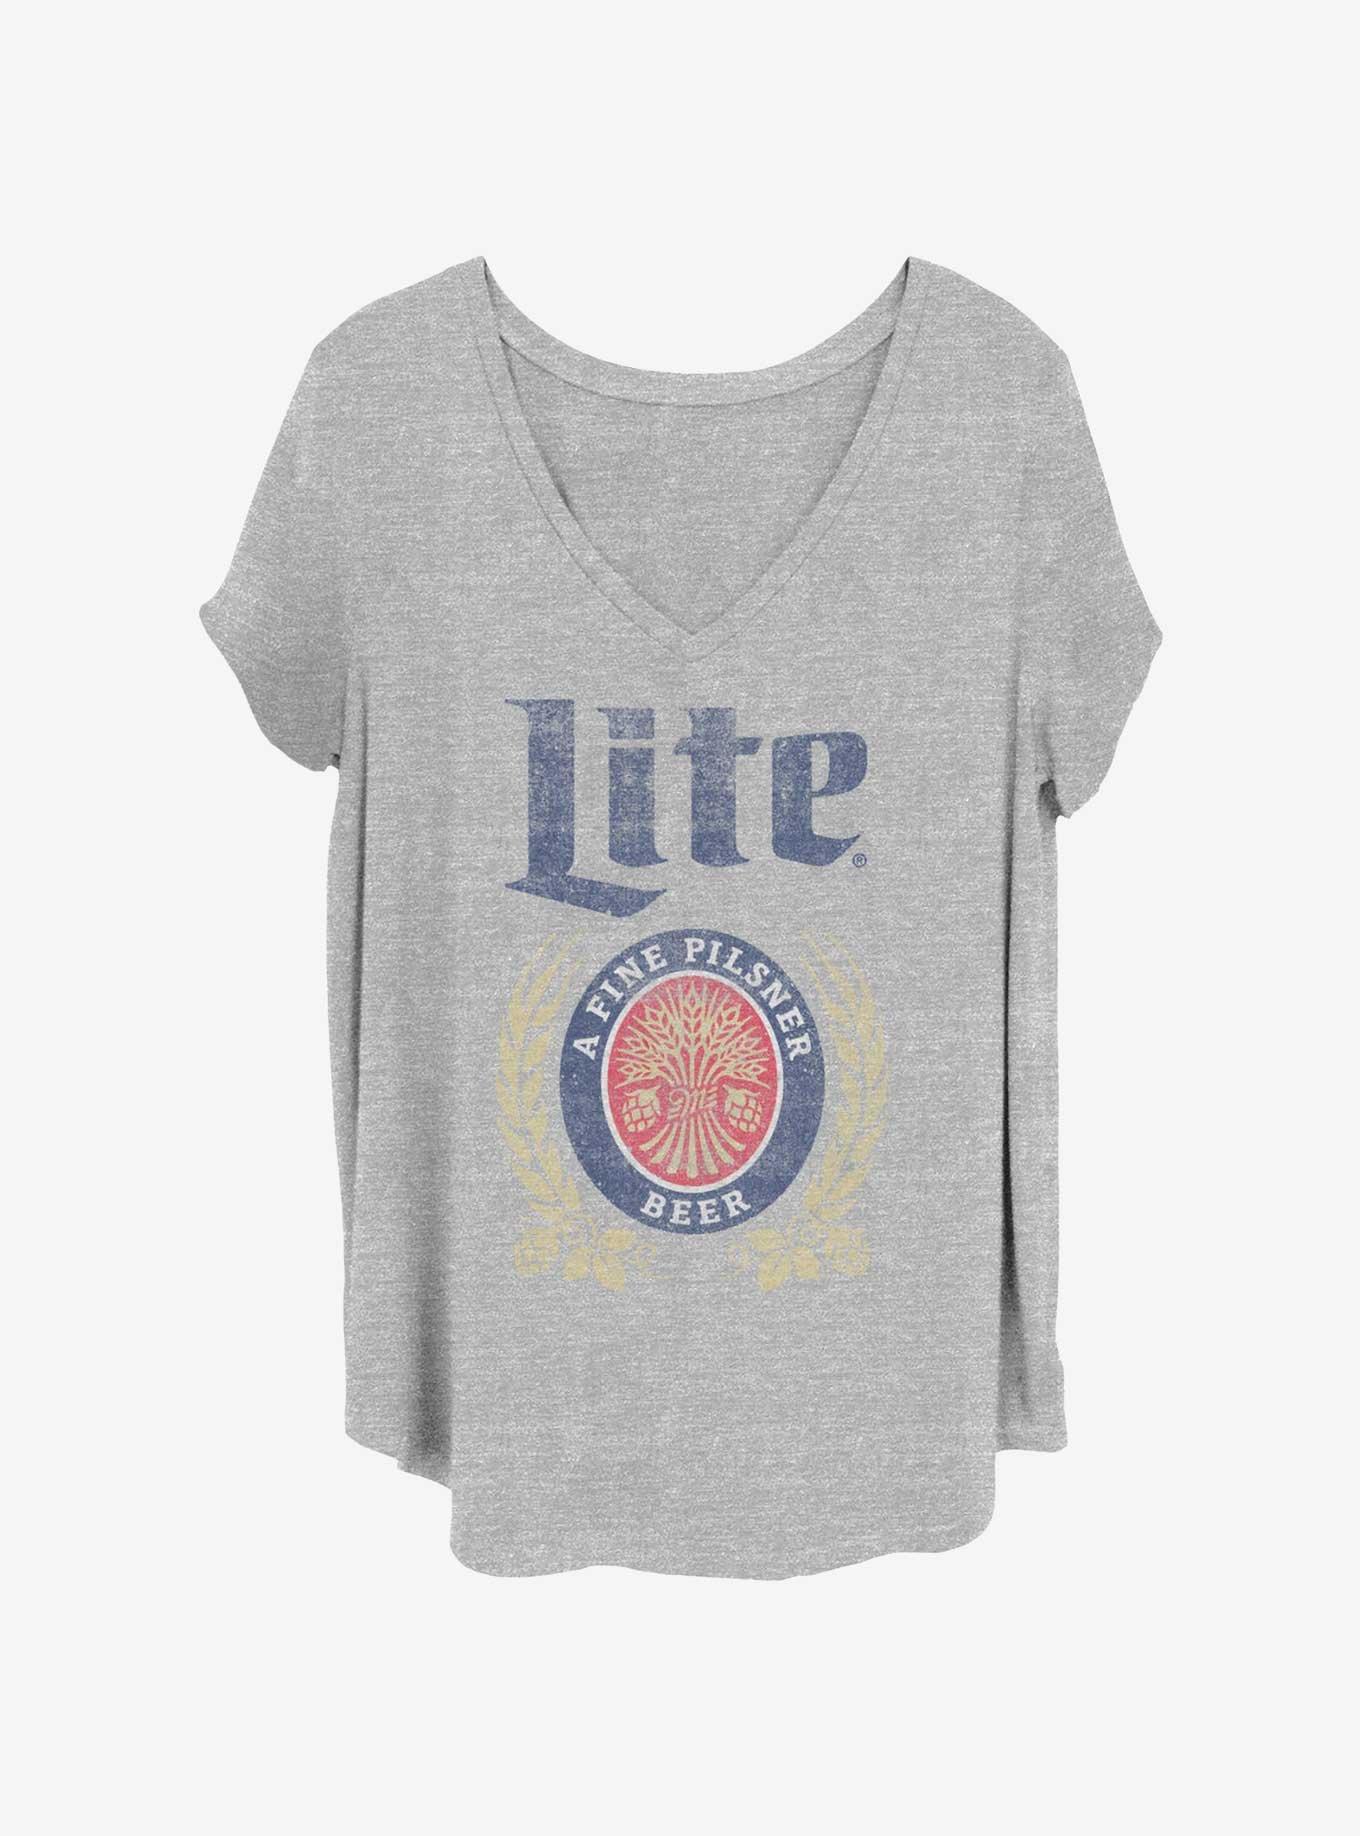 Coors Miller Lite Pilsner Girls T-Shirt Plus